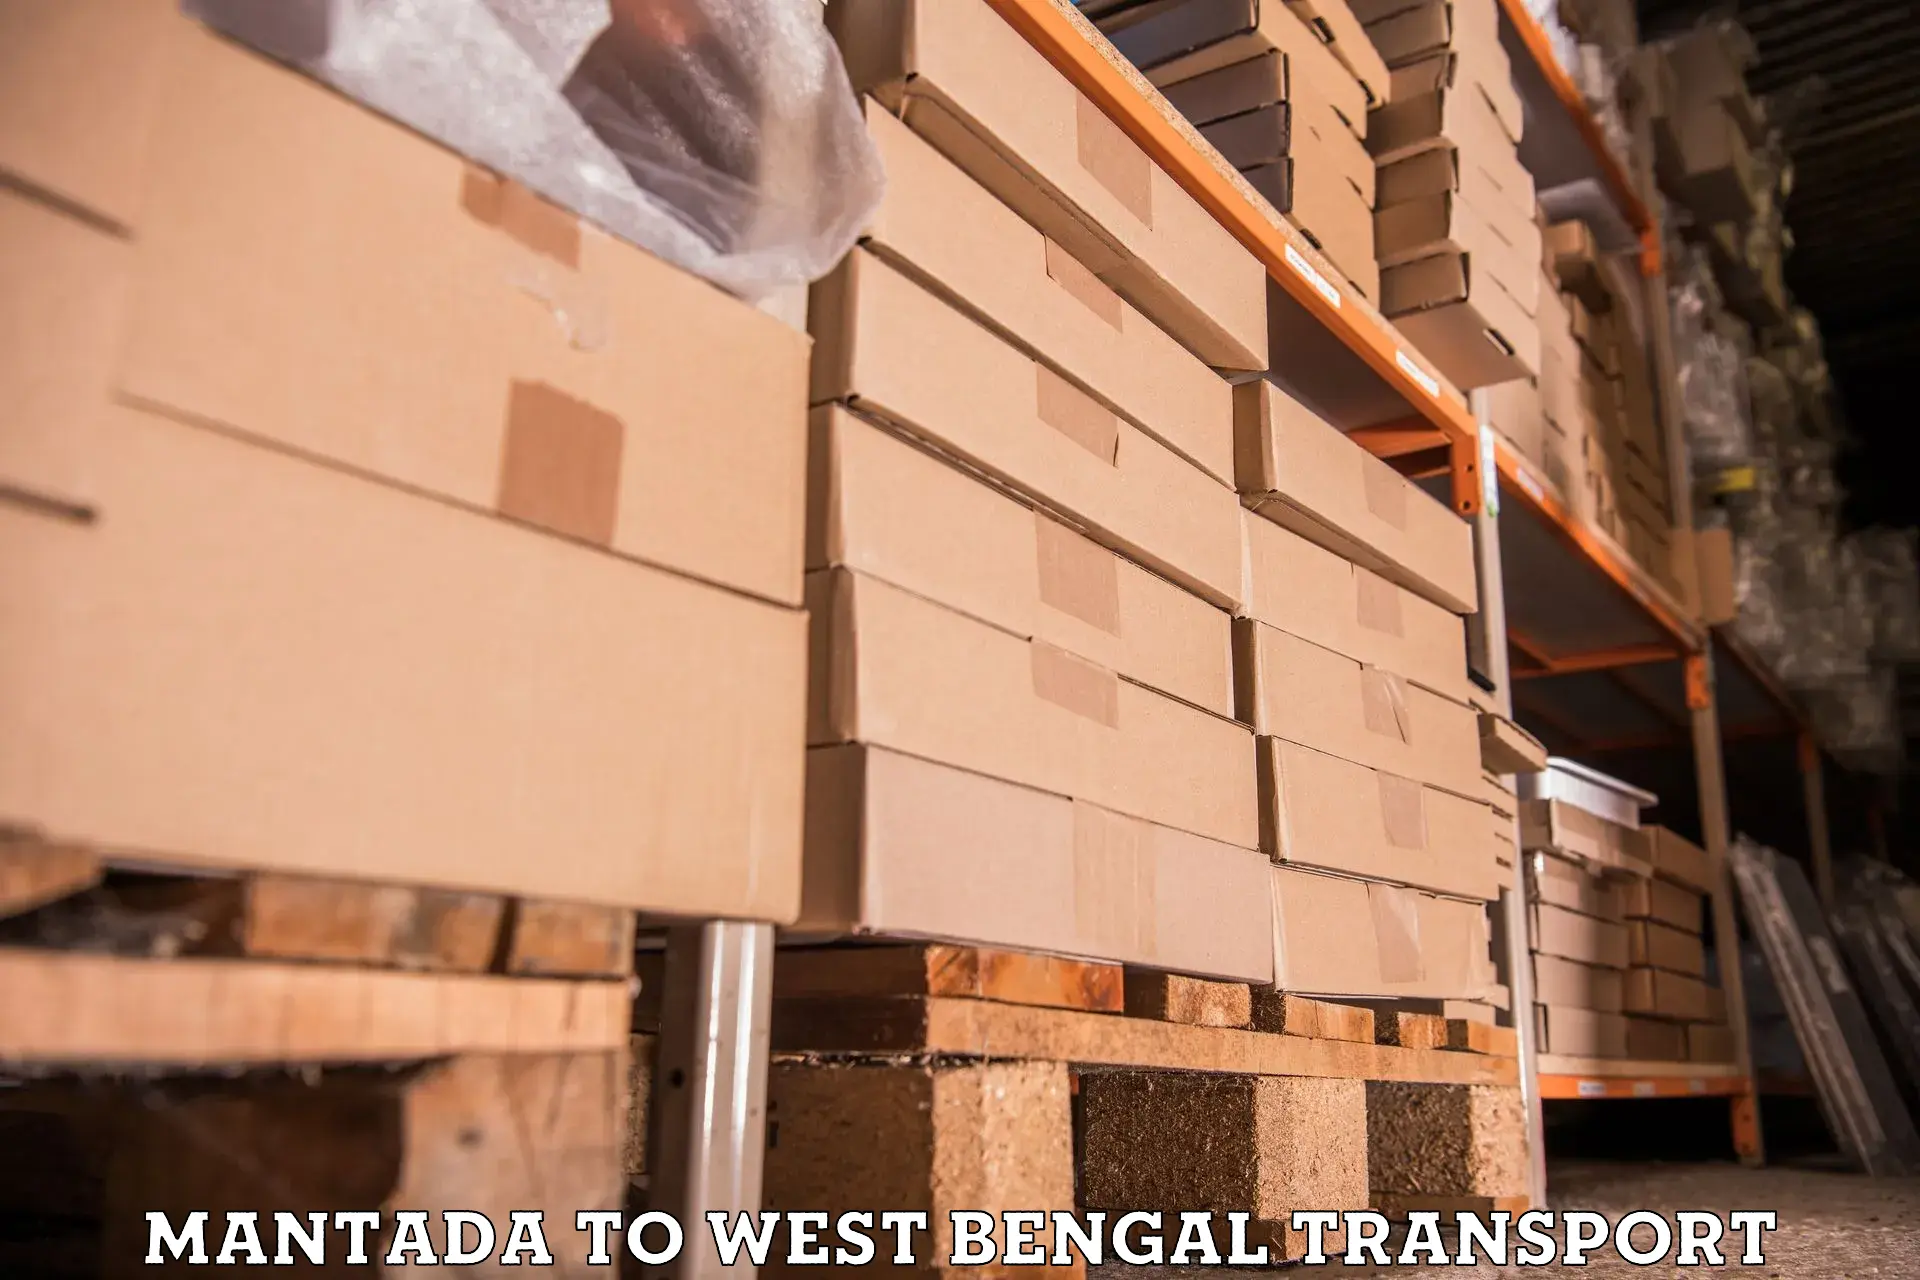 Cargo transport services Mantada to Beleghata